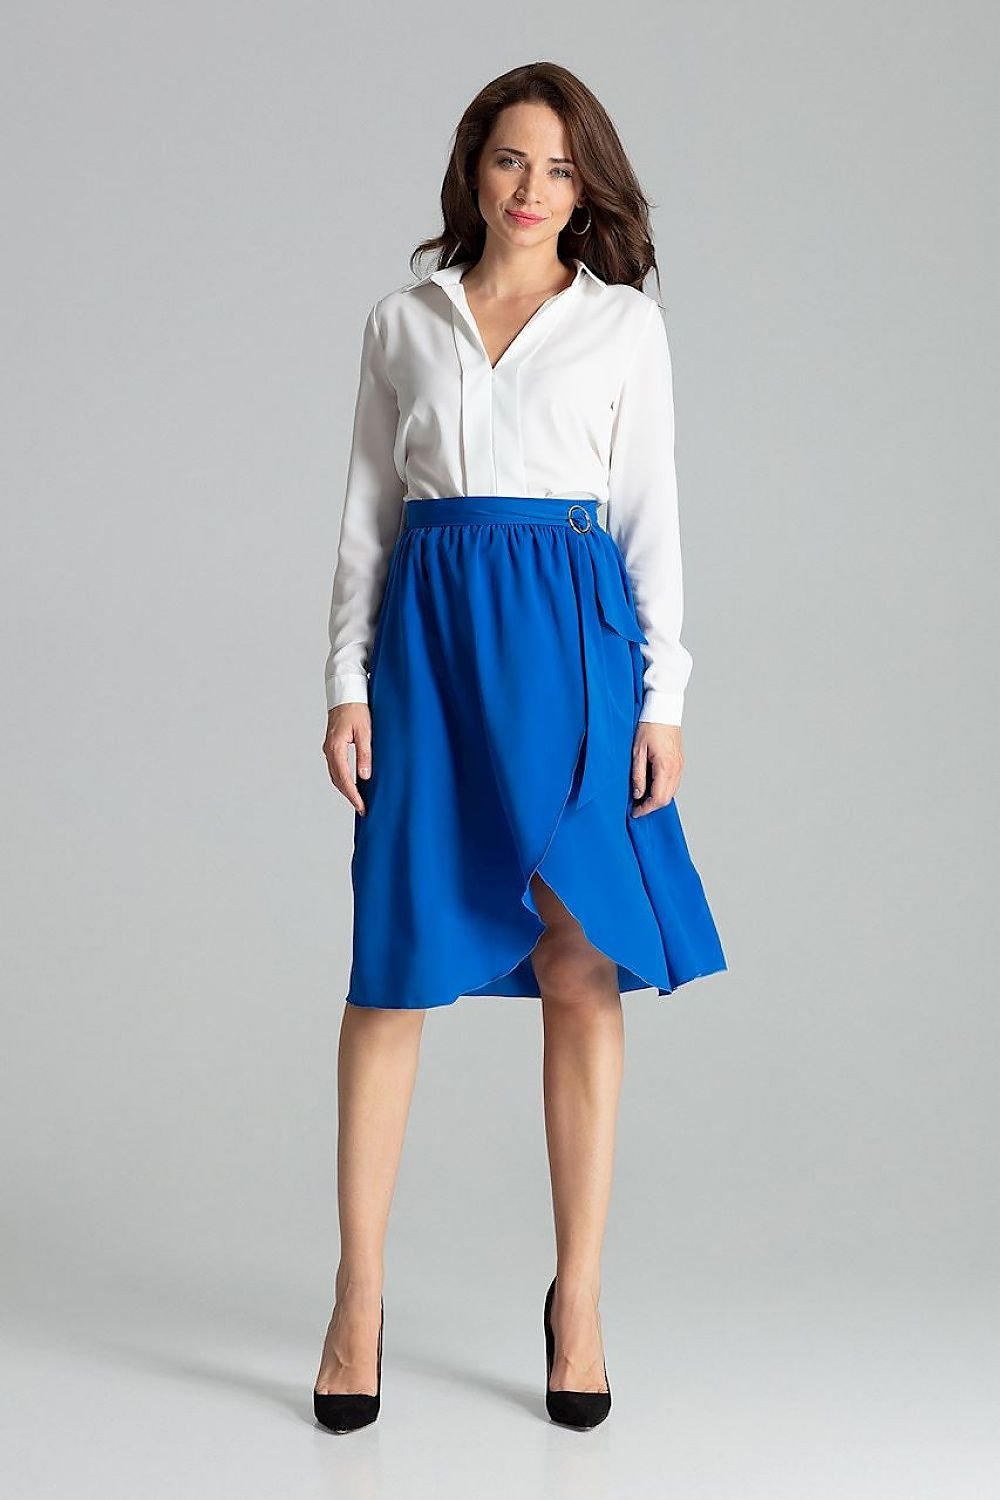 Jupe bleue mi-longue plissée avec taille accentuée, parfaite pour une tenue élégante et moderne.